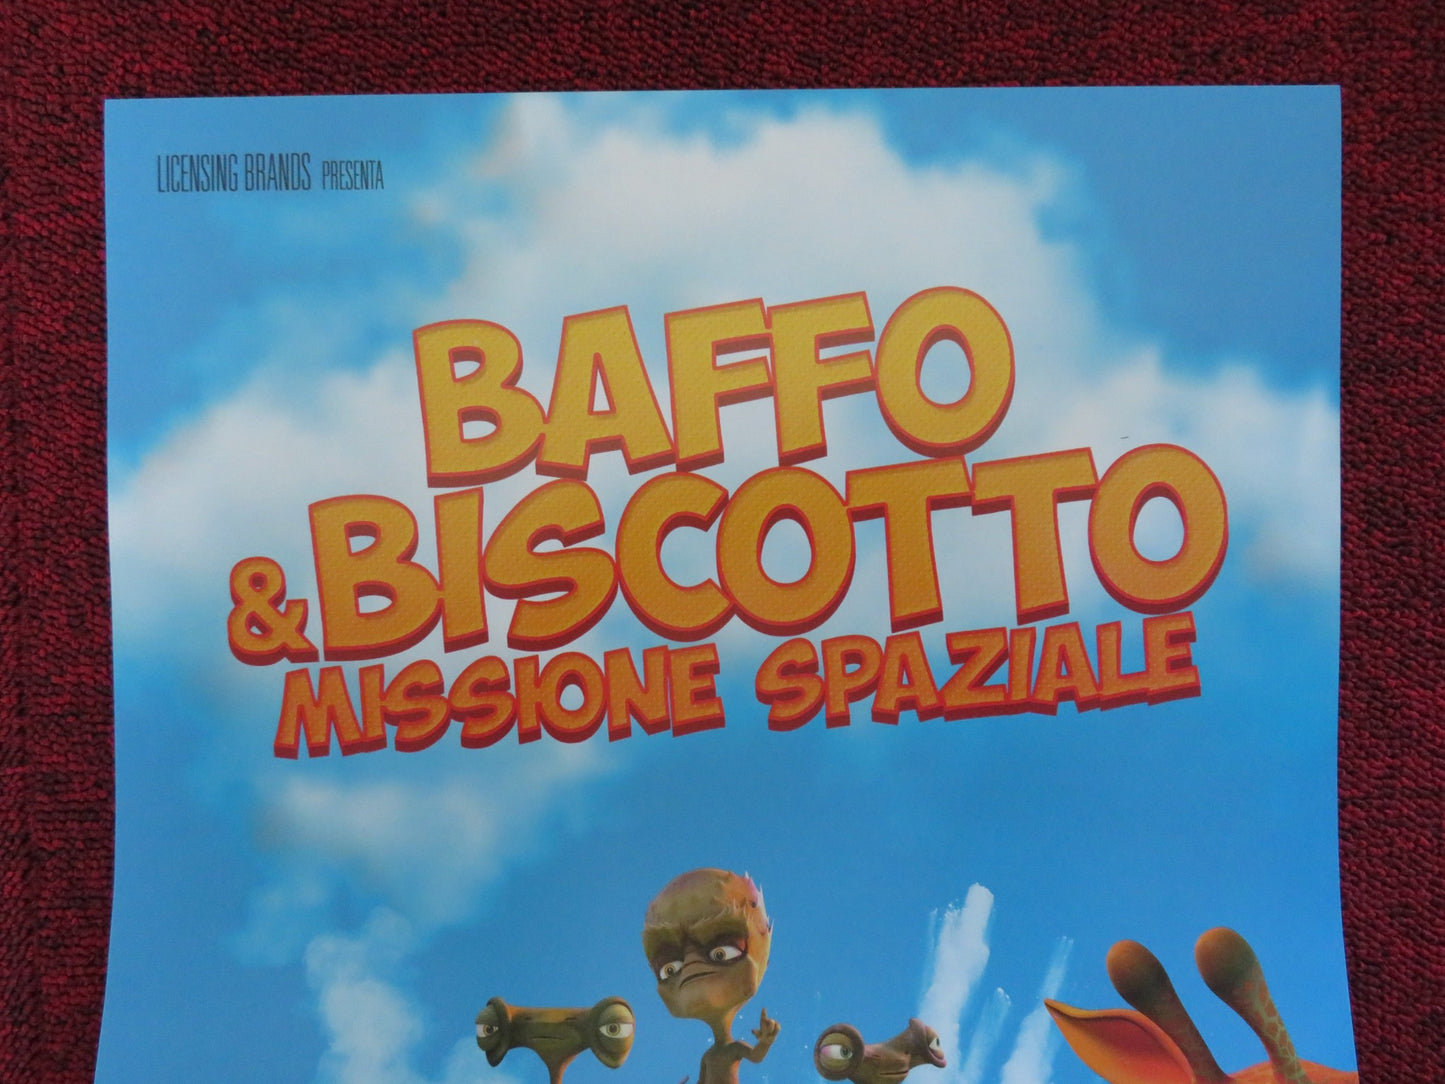 BAFFO & BISCOTTO MISSIONE SPAZIALE ITALIAN LOCANDINA POSTER  J. SALWAY 2018